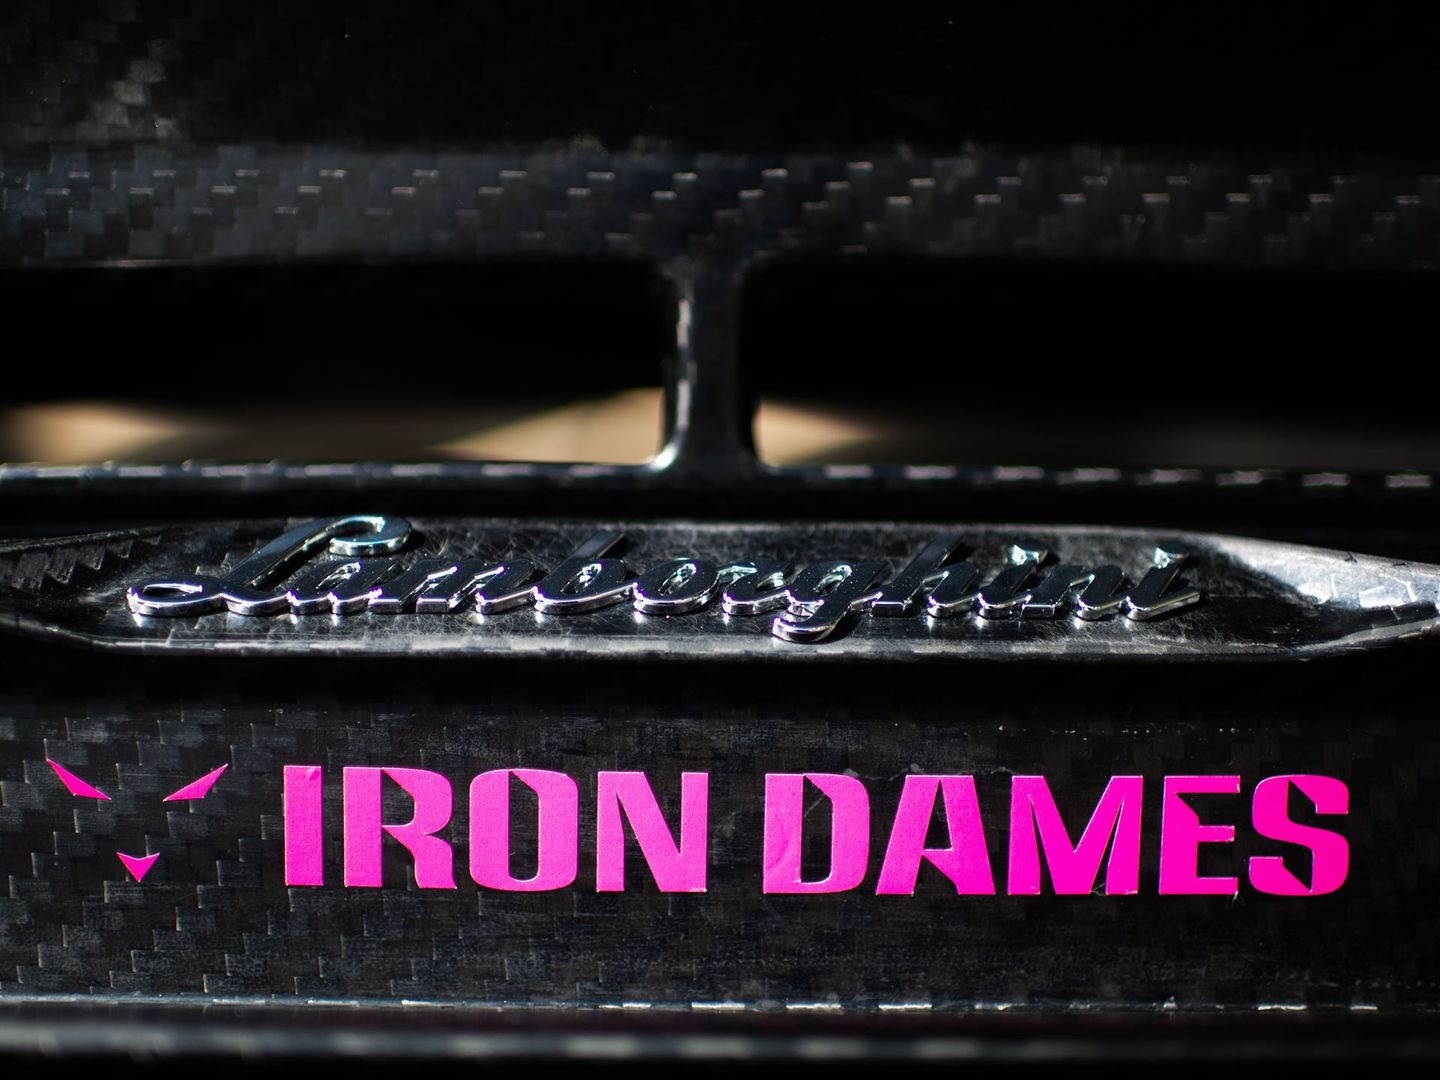 Iron Dames (fot. materiały prasowe)